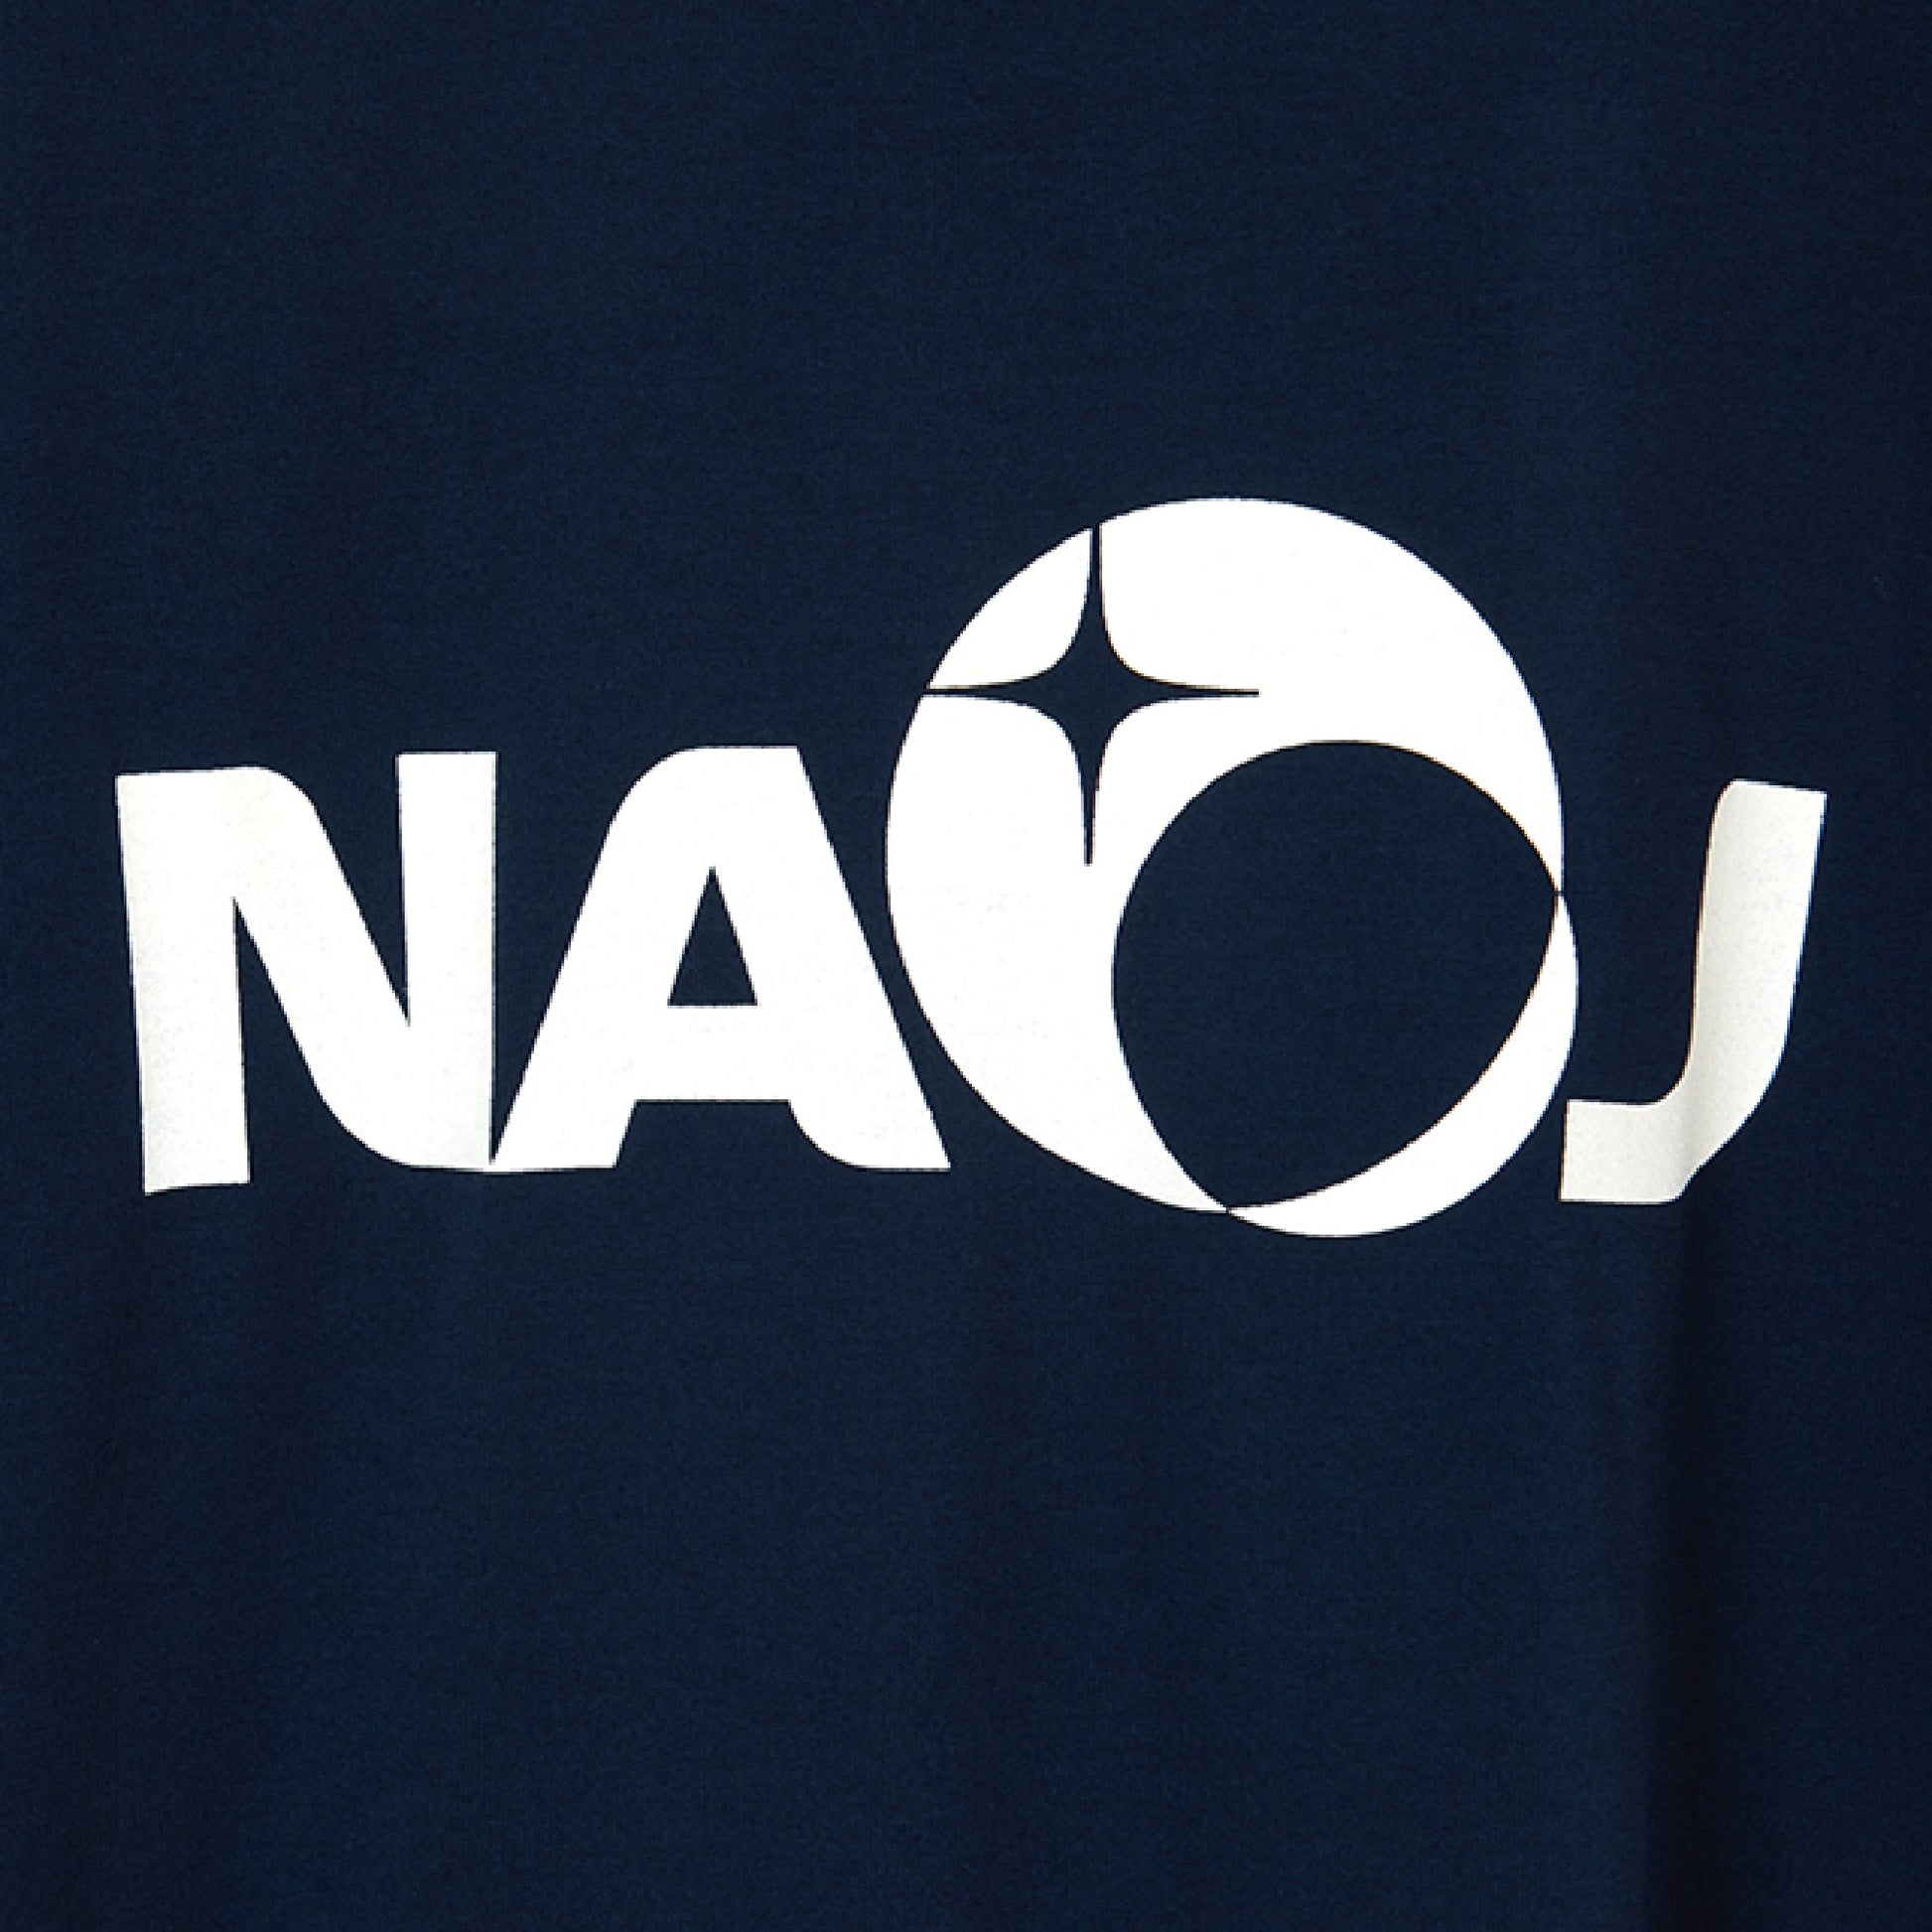 国立天文台 NAOJ ロゴマーク WIC. Tシャツ ネイビー S 02